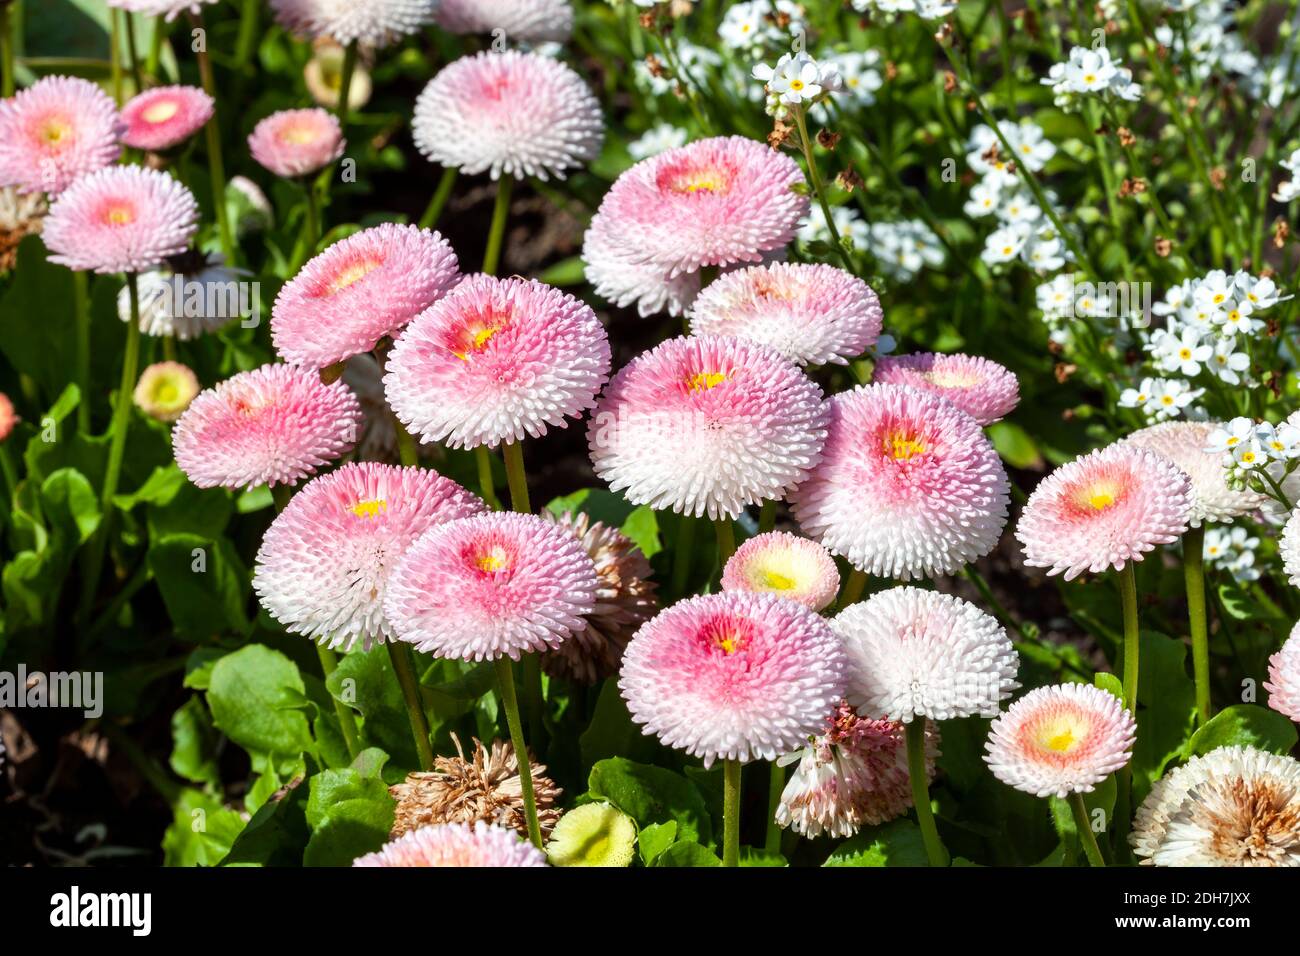 Pink Bellis perennis eine gemeinsame krautige Pompon doppelt Gänseblümchen  mehrjährige winterharte Gartenblume Pflanze wächst während der  Frühjahrsblühzeit, Stock Stockfotografie - Alamy